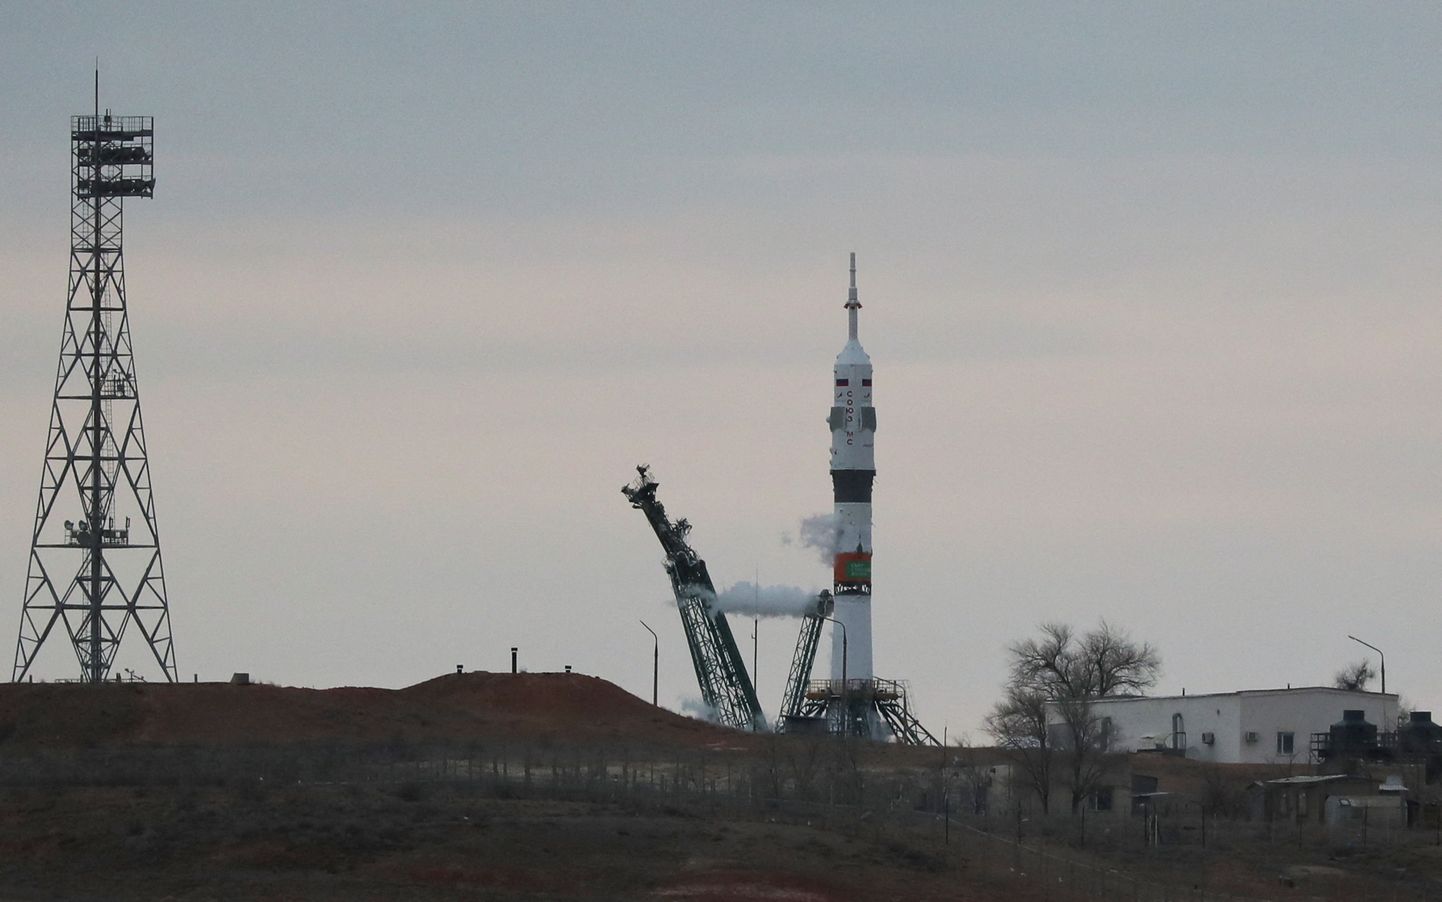 Запуск корабля "Союз" к МКС был отменен перед самым стартом - "впервые в истории российской космонавтики"